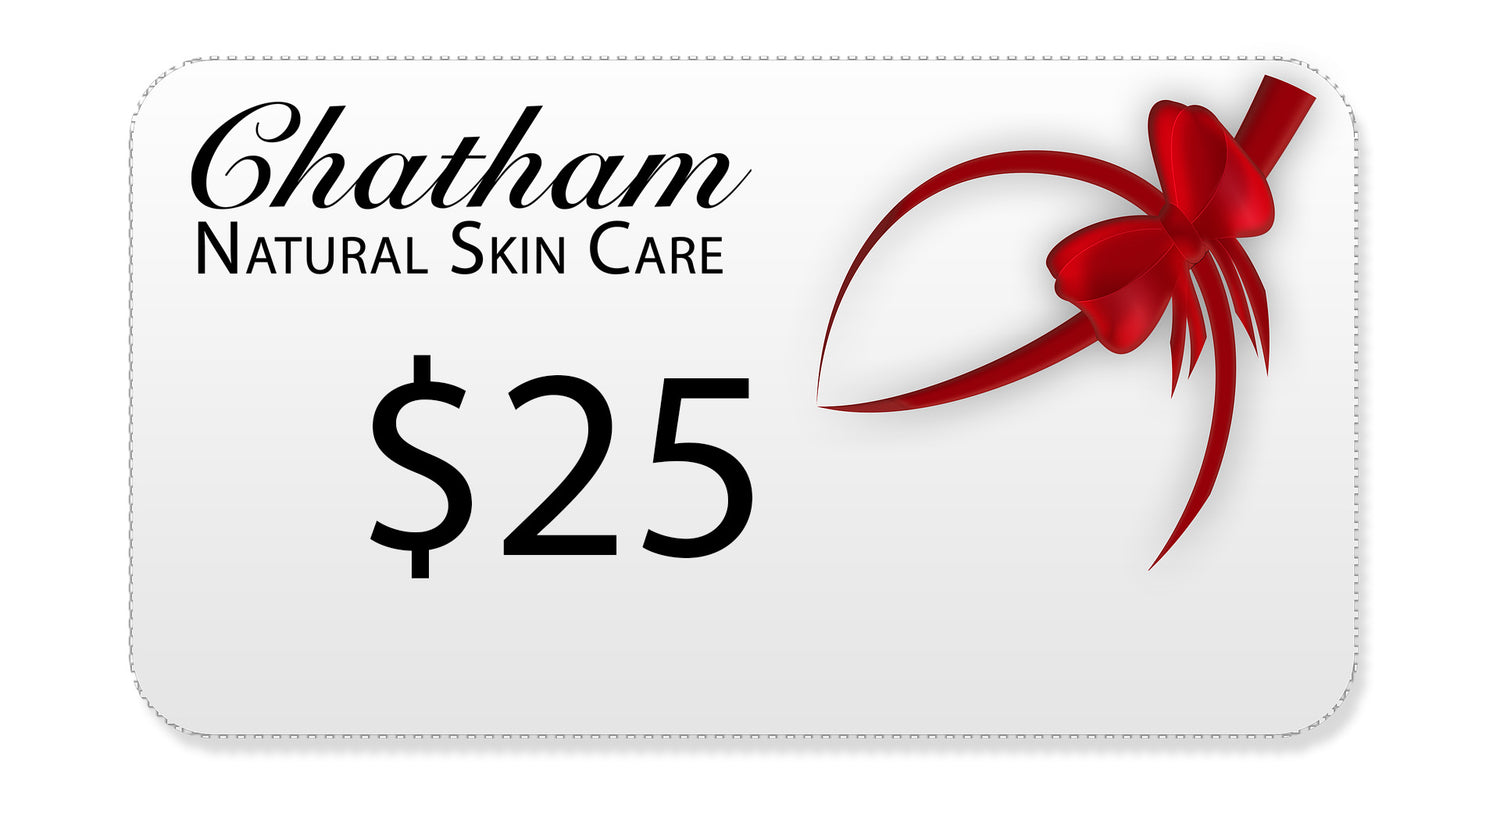 Chatham Natural Skin Care Gift Card